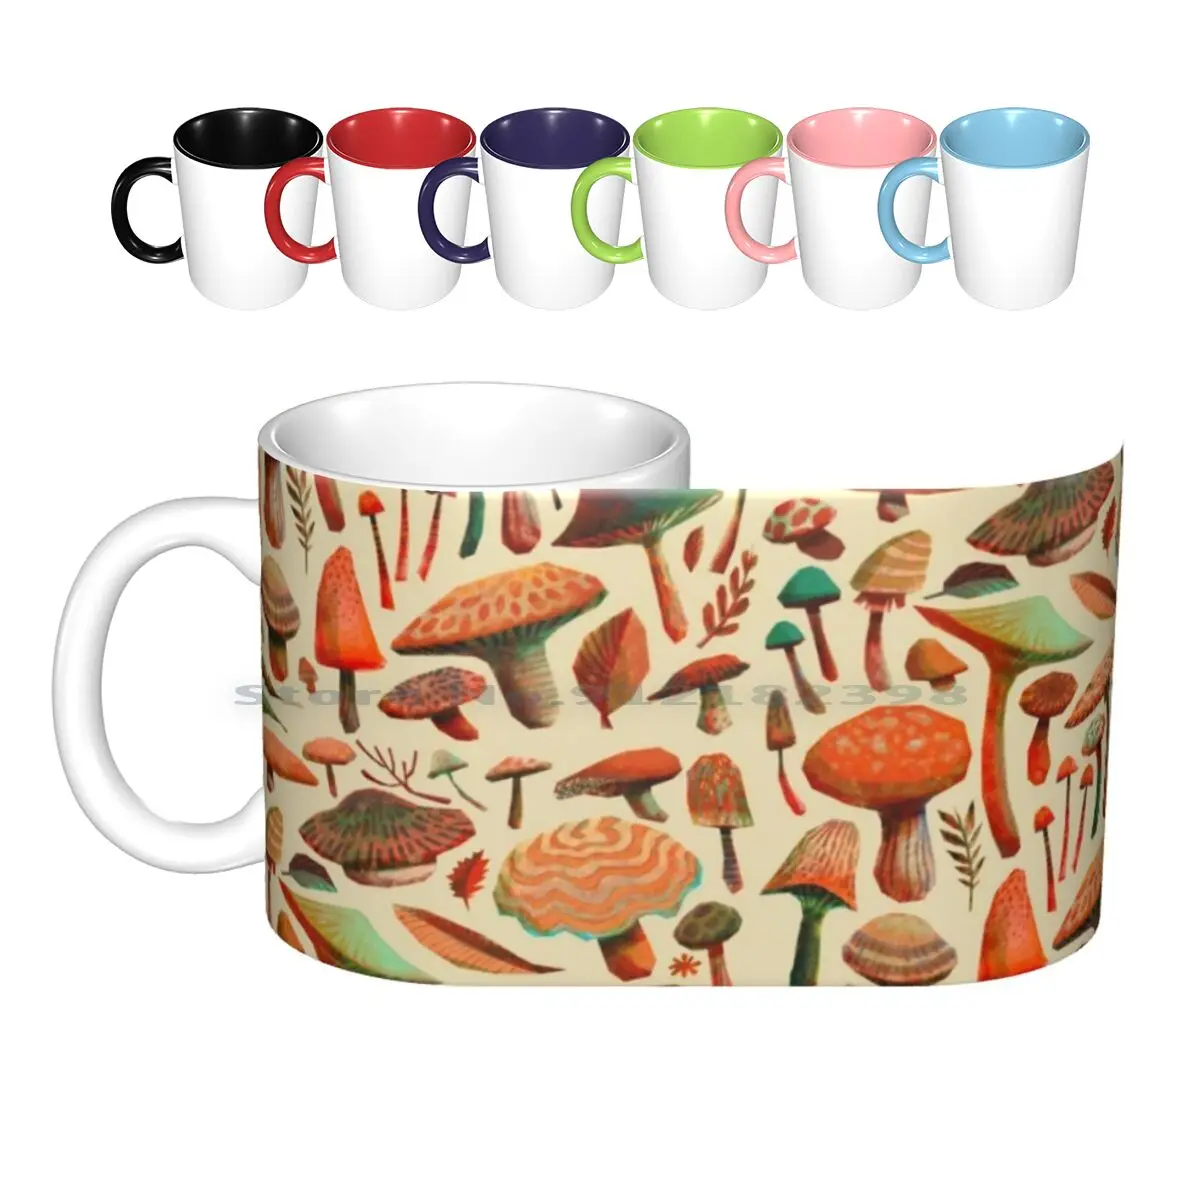 

Керамические кружки для сбора грибов, кофейные чашки, кружка для чая с молоком, грибы, карандаш, фотошоп, природный лес, Осенний узор, оранжев...